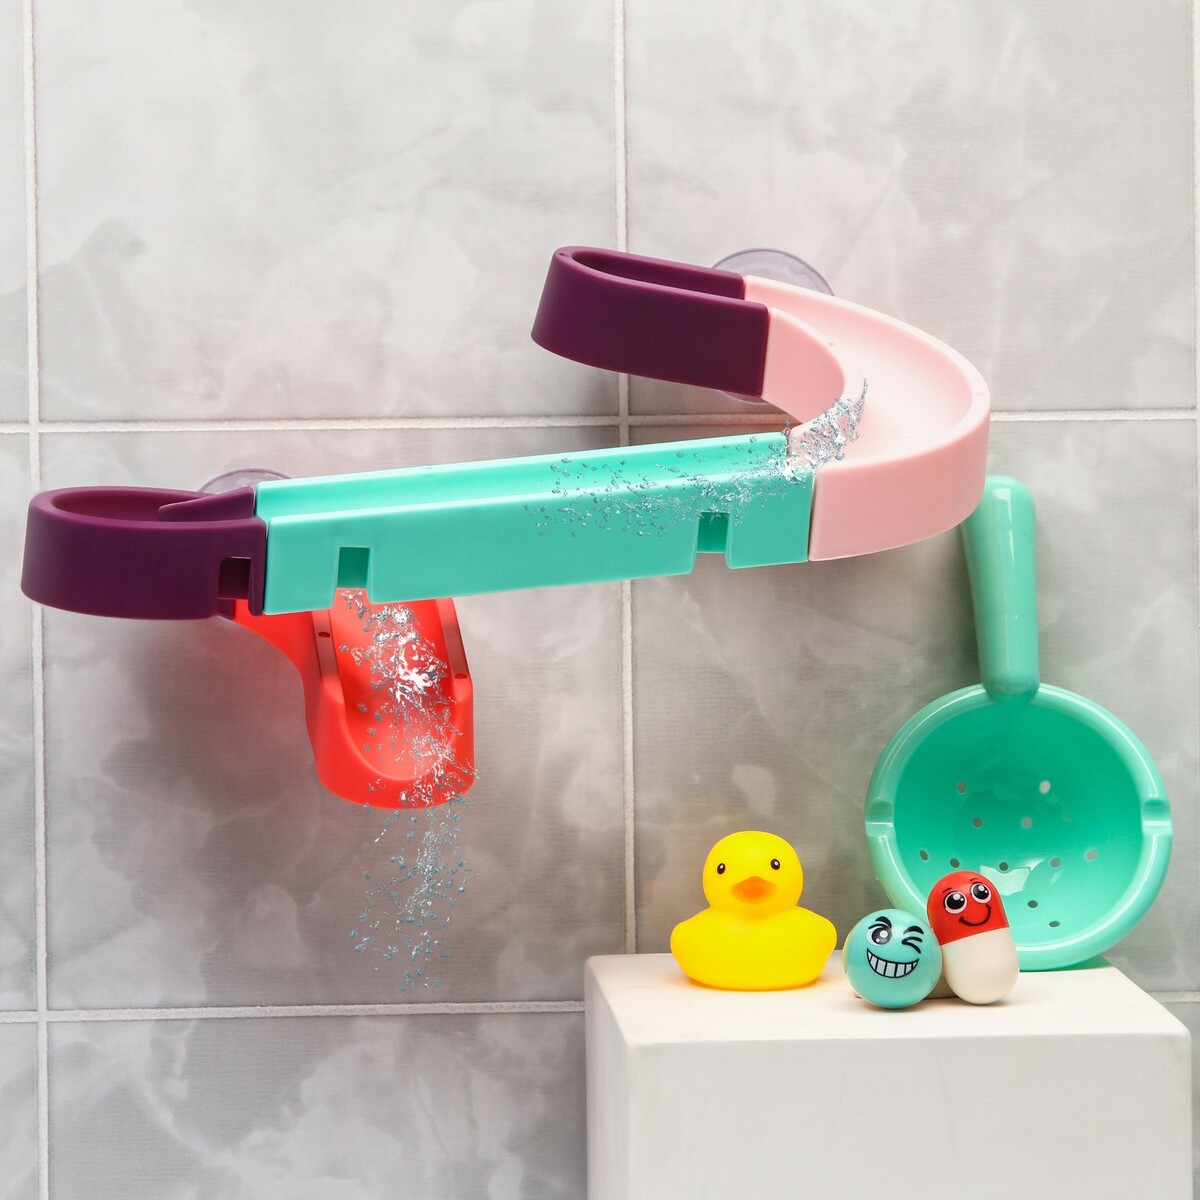 Игрушка водная горка для игры в ванной, конструктор, набор на присосках набор для купания детский ванночка 86 см горка ковш лейка голубой